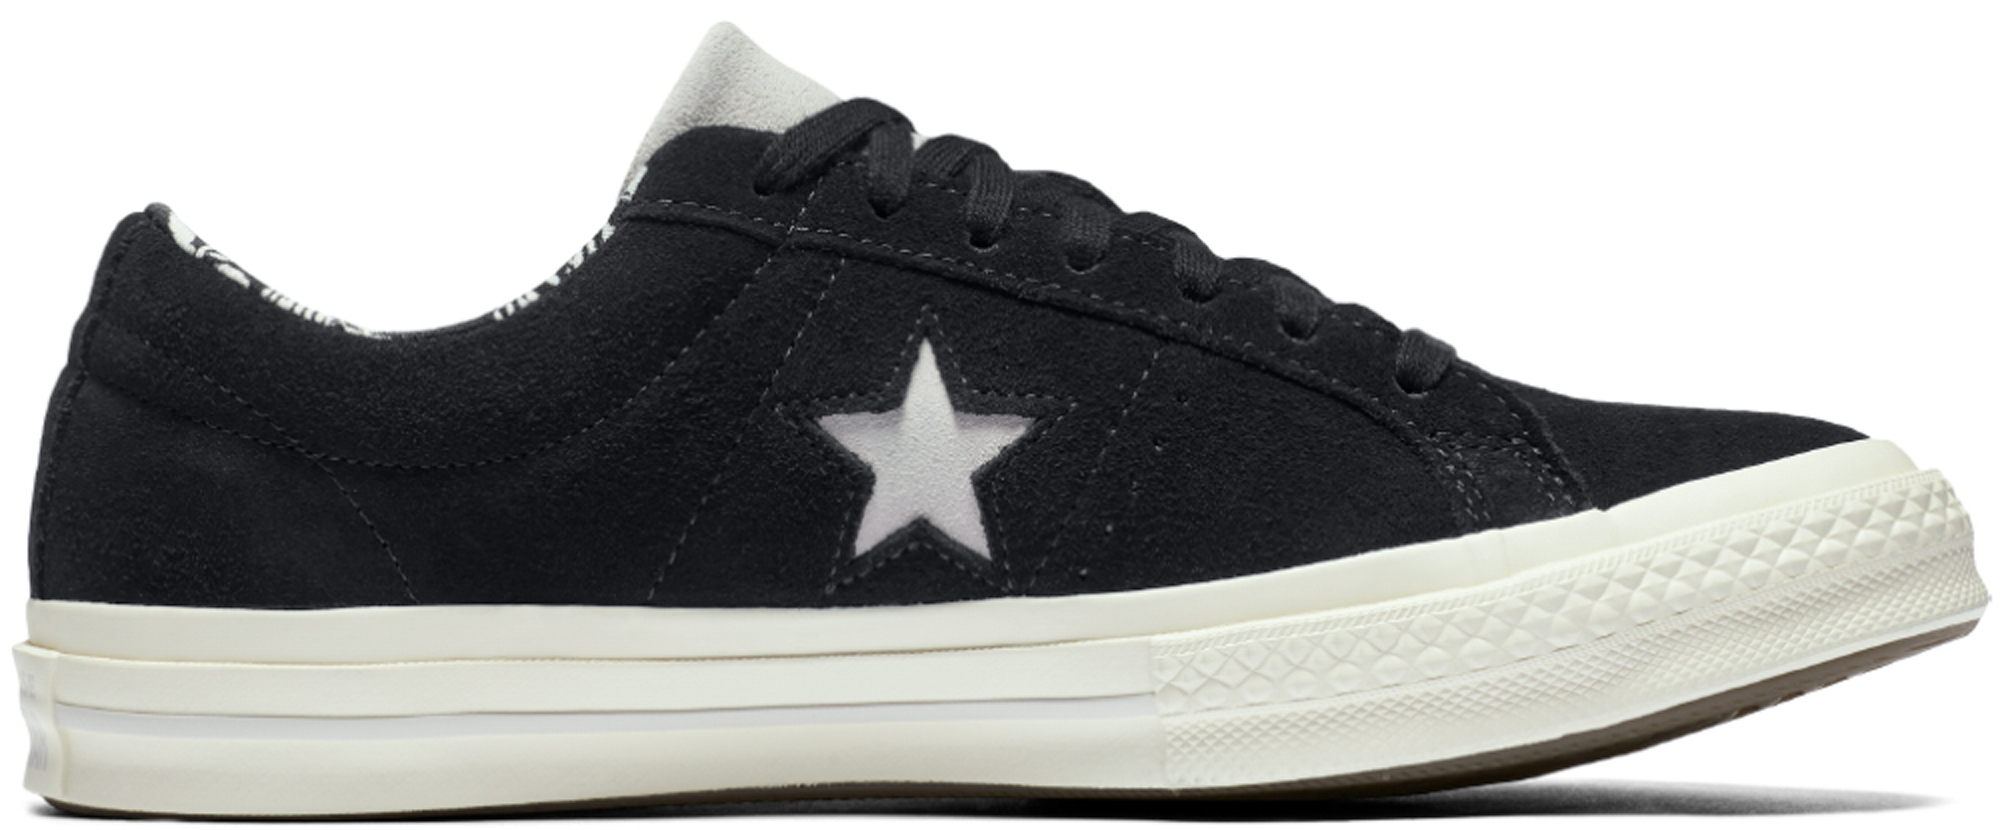 購入しCONVERSE ONE STAR OX 靴